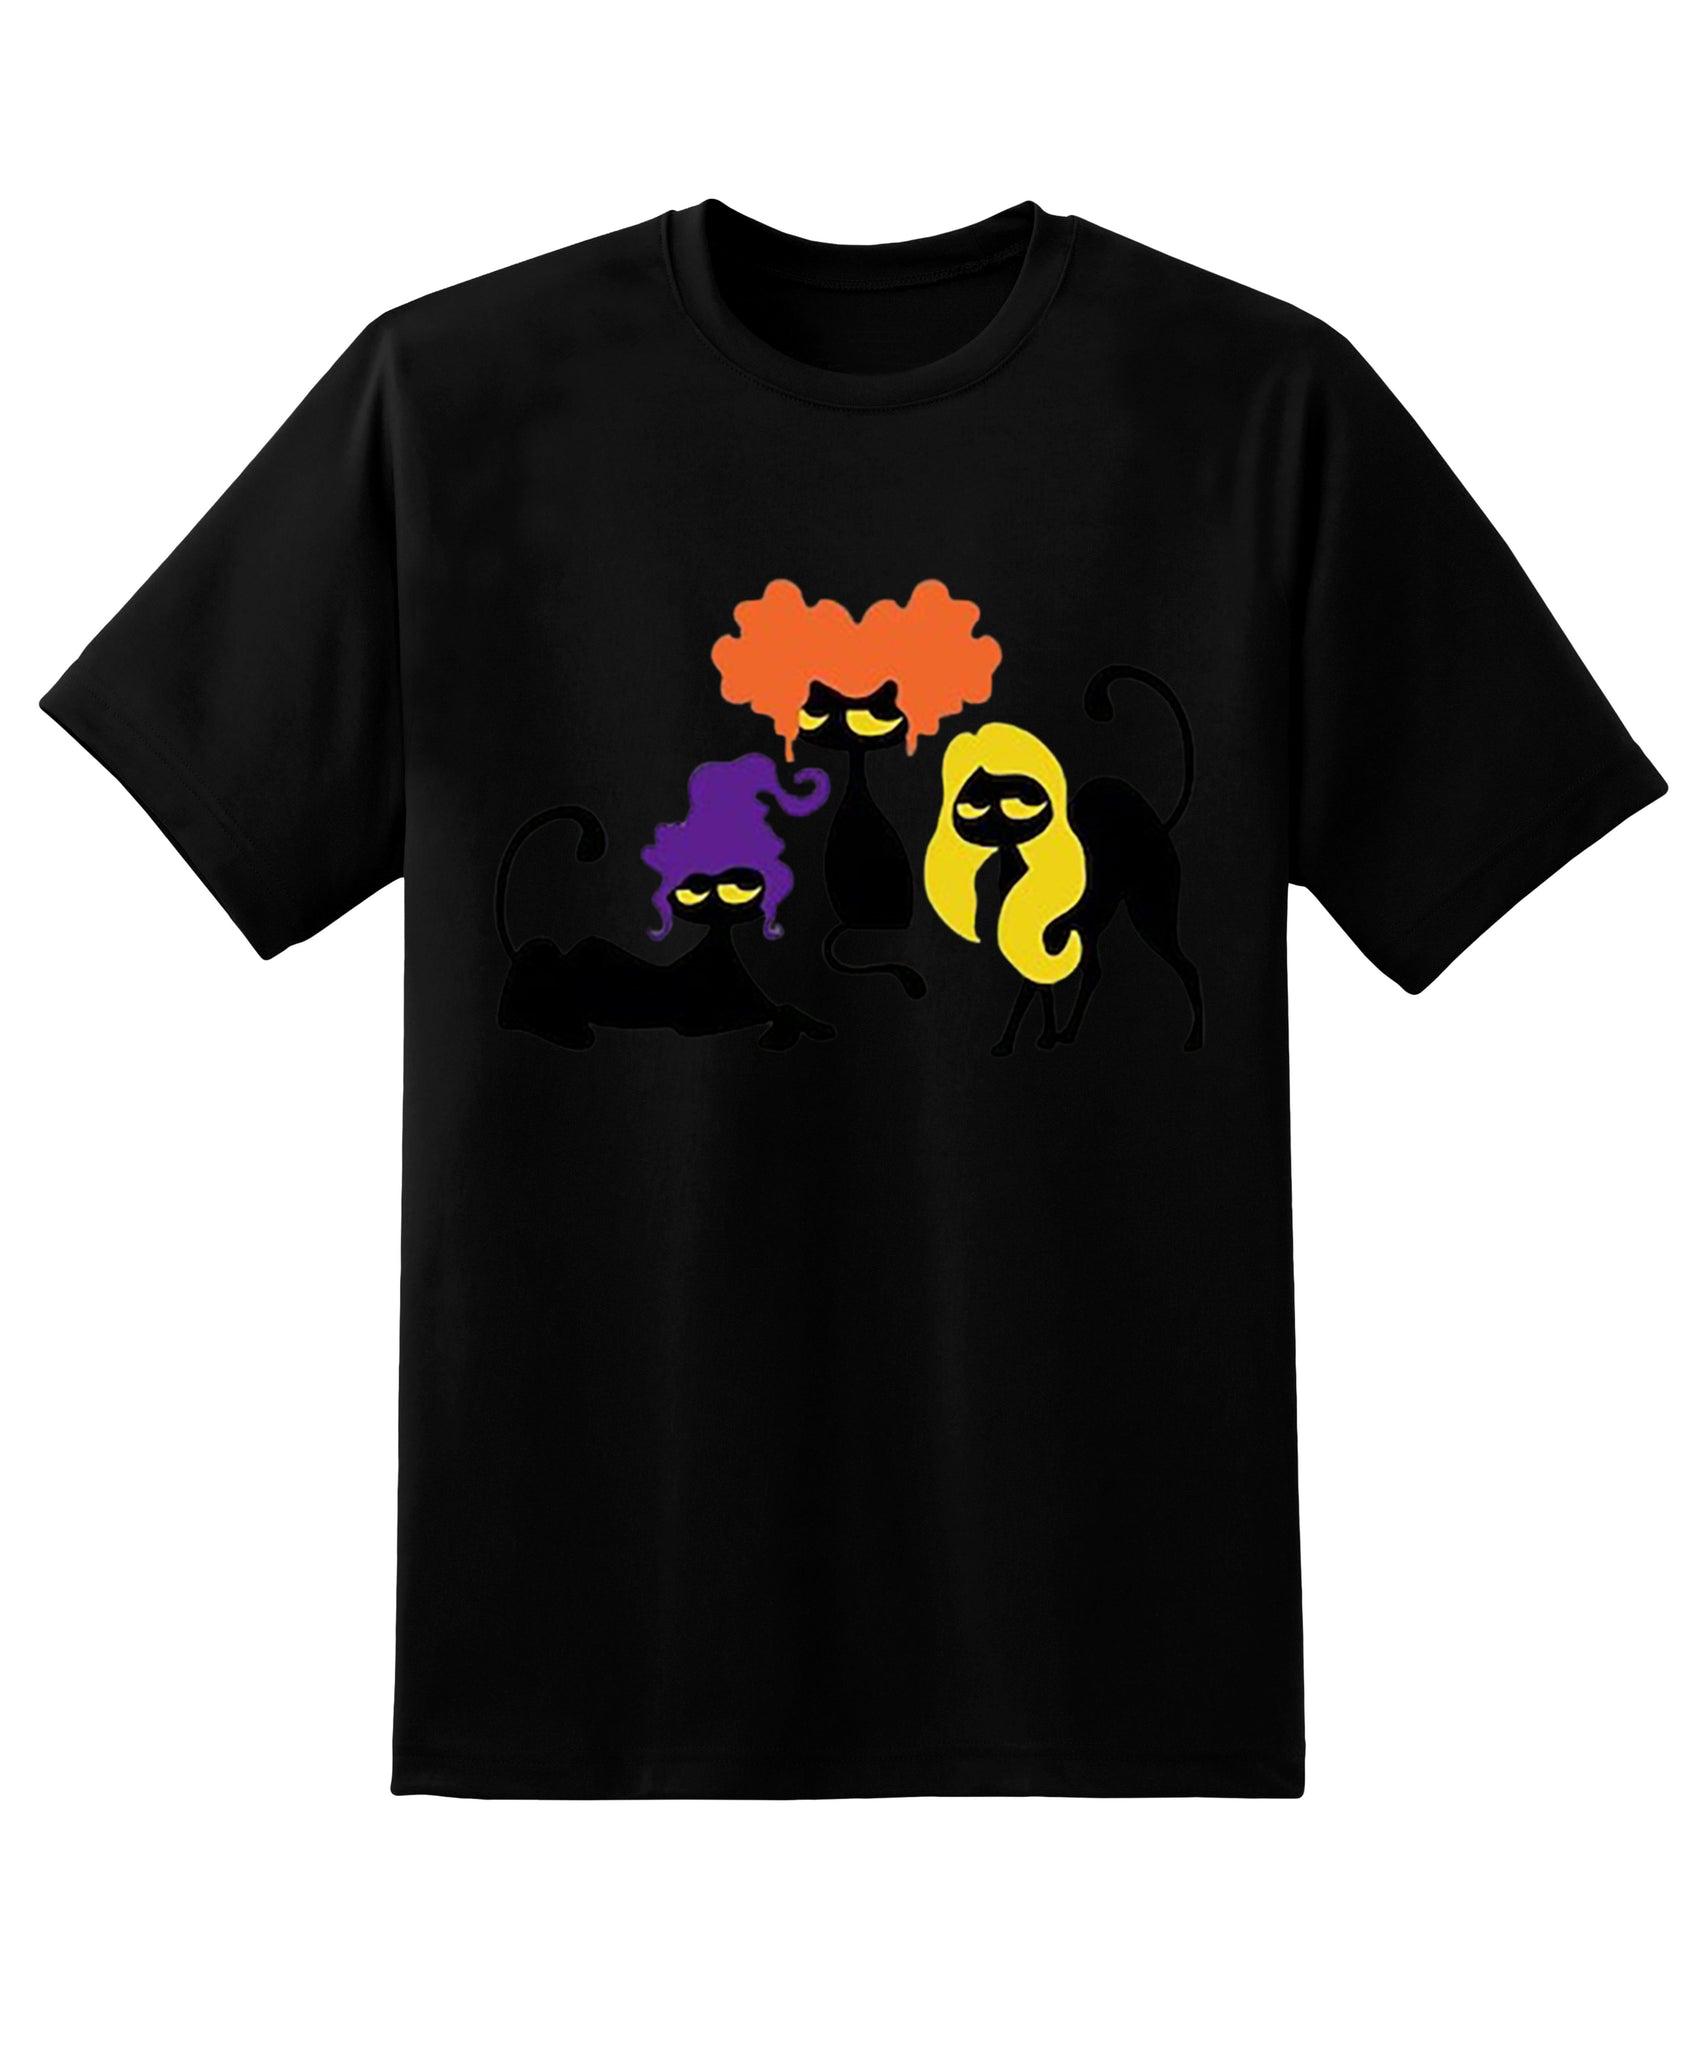 Skitongift Halloween Cat T-Shirt,Black Cat Crewneck,Spooky Season,Cat Lovers Shirt,Halloween Cat Shirt,Ghost Black Cat Crewneck,Halloween Shirt